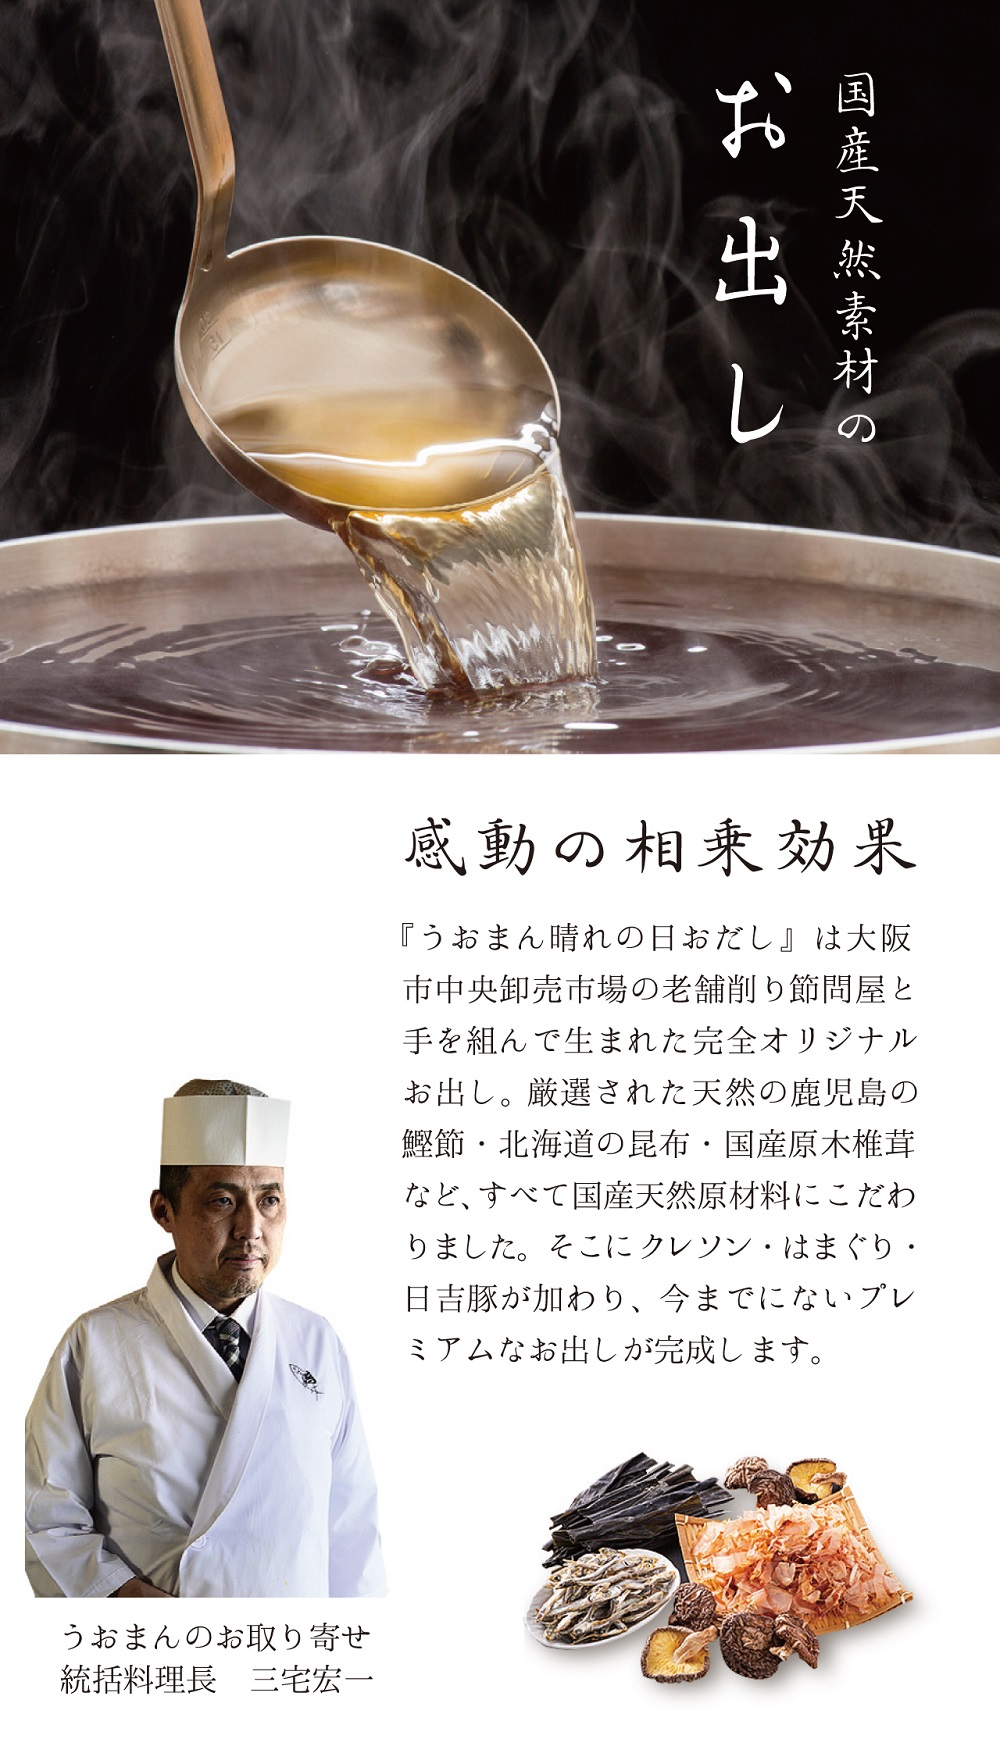 京都日吉豚と九十九里はまぐりのプレミアムクレソン鍋